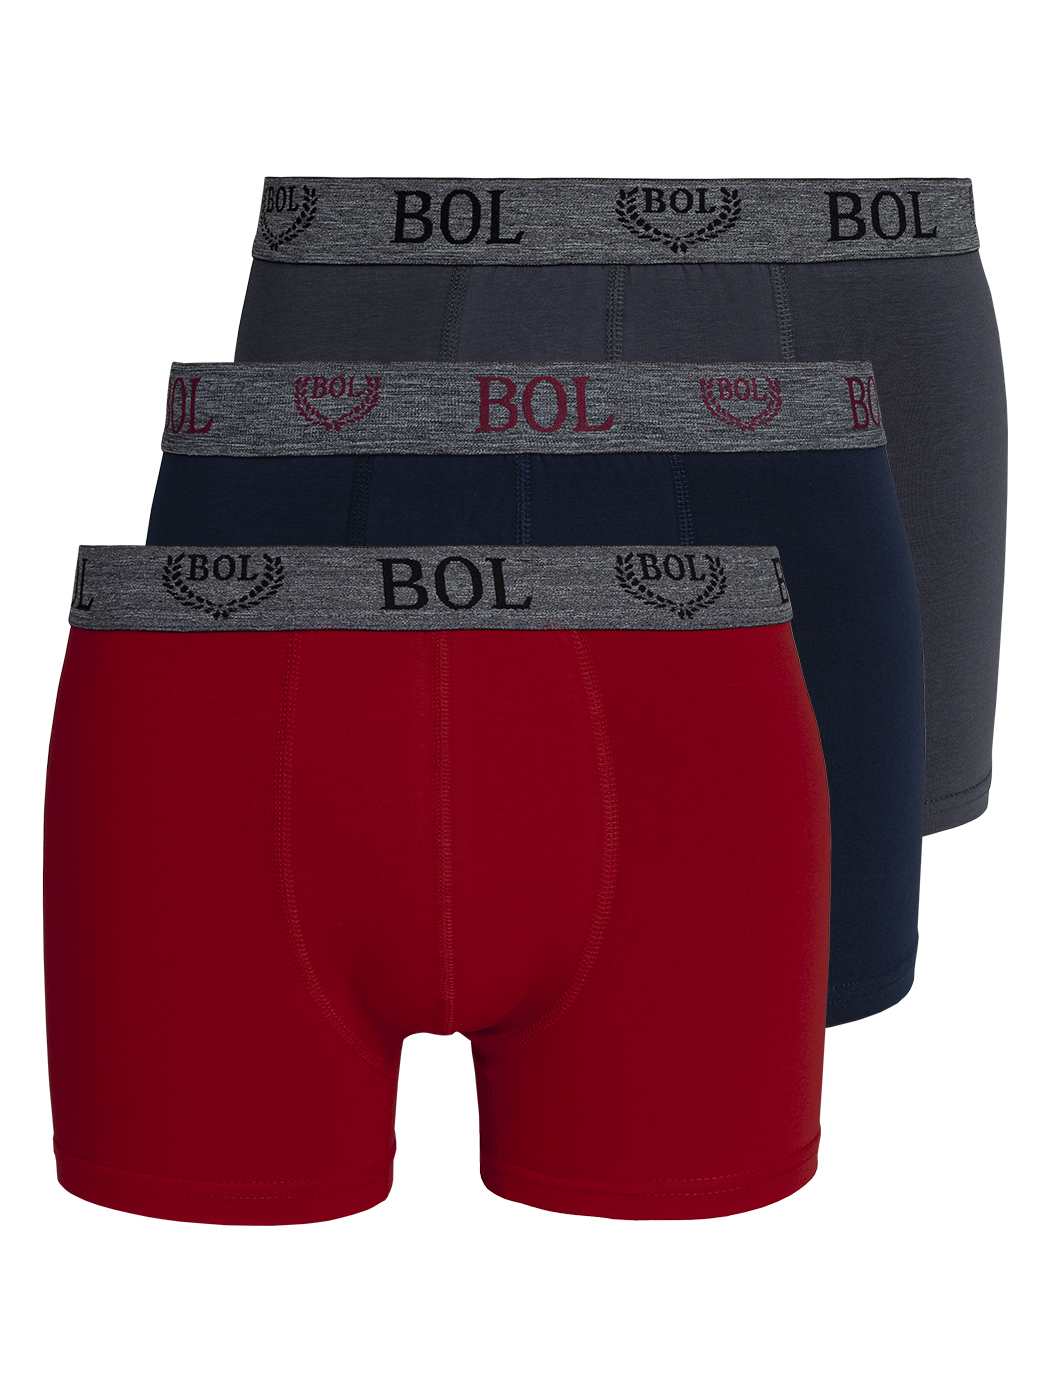 Комплект трусов мужских BOL Men's 178 серых; синих; красных XL